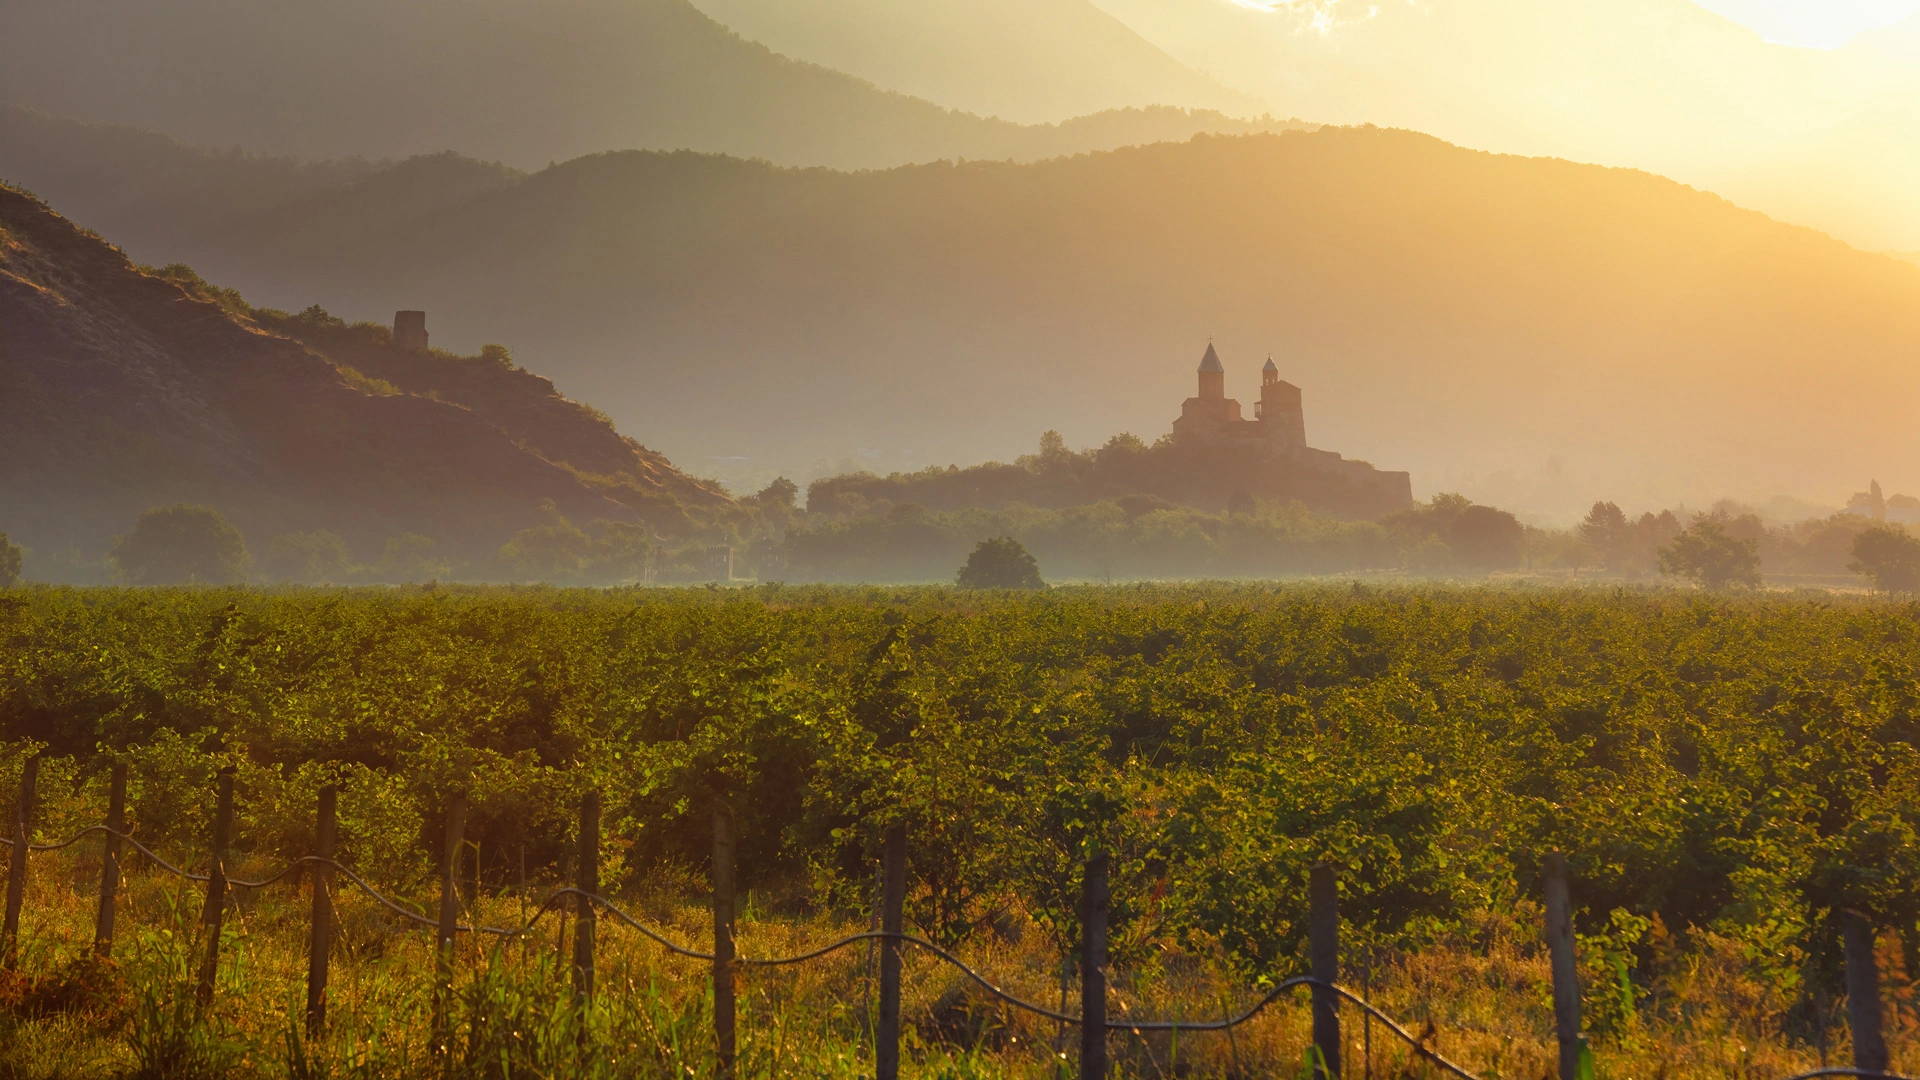 Sonnenuntergang über einem Weinberg, der zur Gremi-Festung führt, mit dem Kaukasusgebirge im Hintergrund, das den reichen Weinbau und das Erbe Georgiens symbolisiert.